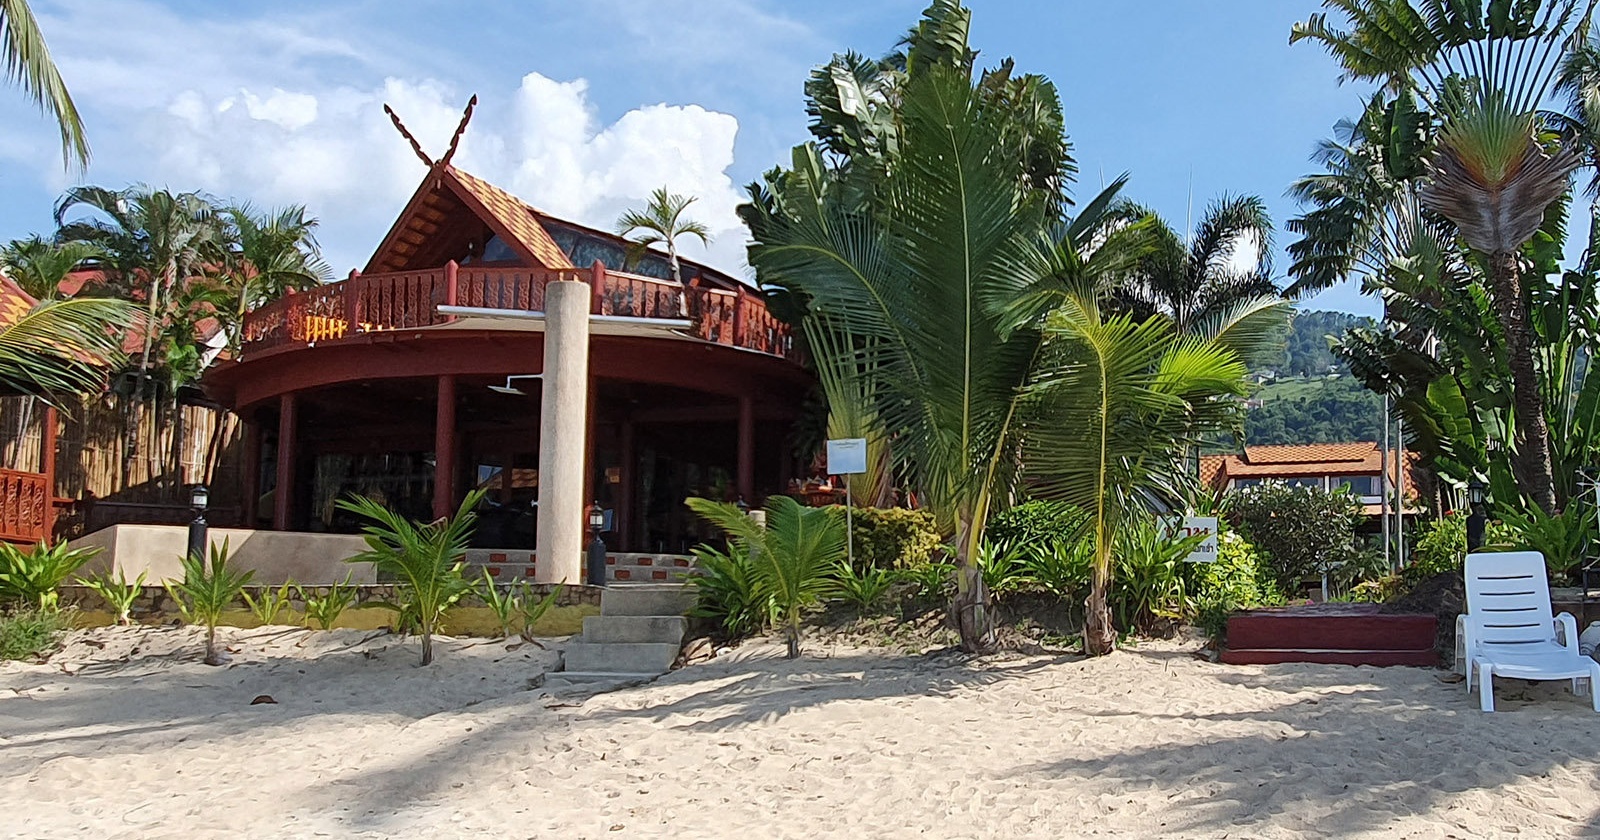 R1 Coconut River Beachfront Villa